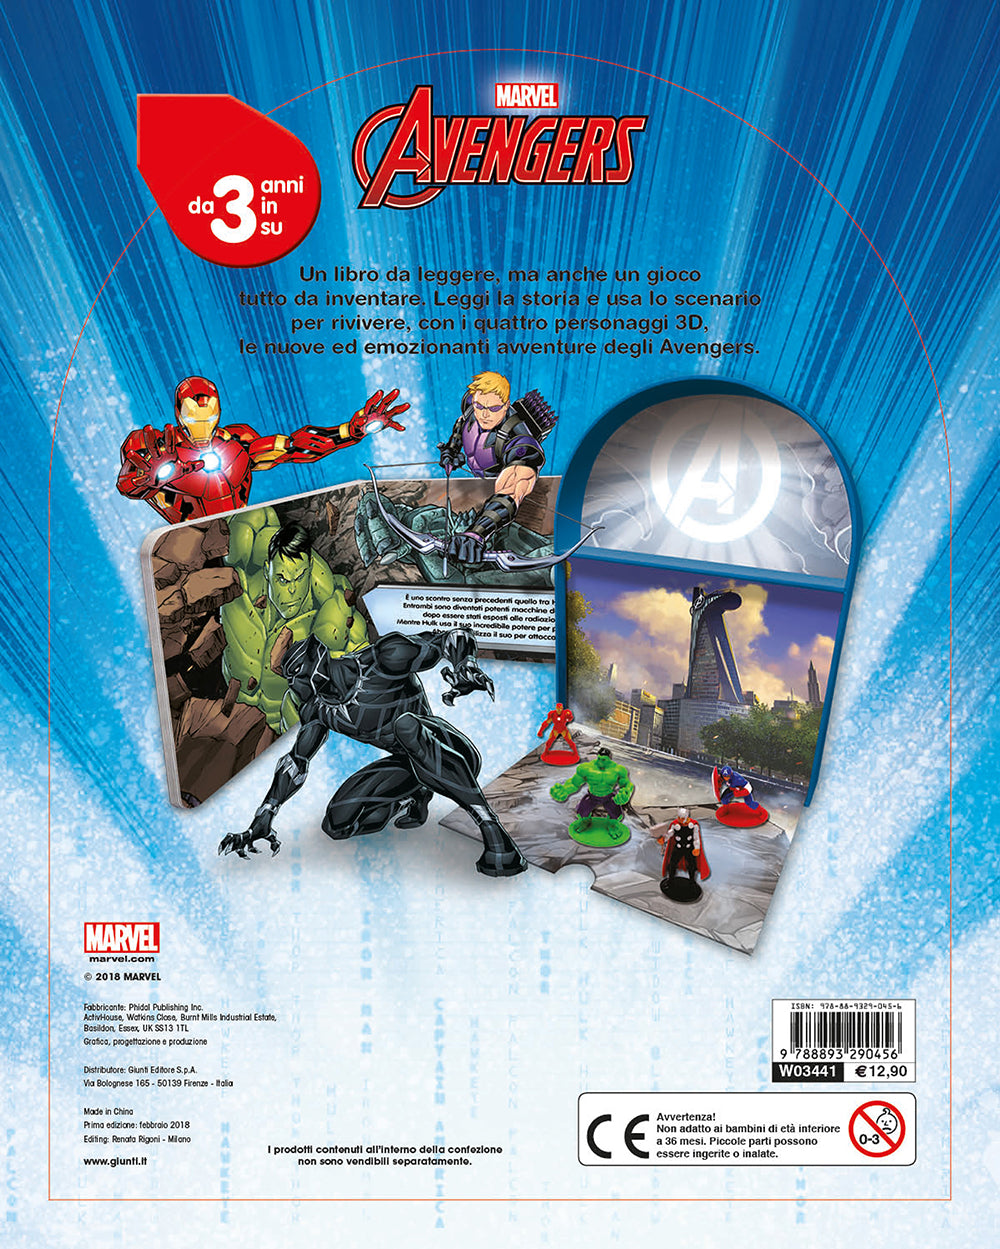 LibroGiocaKit - Avengers. Con 4 personaggi 3D e 1 scenario per giocare!